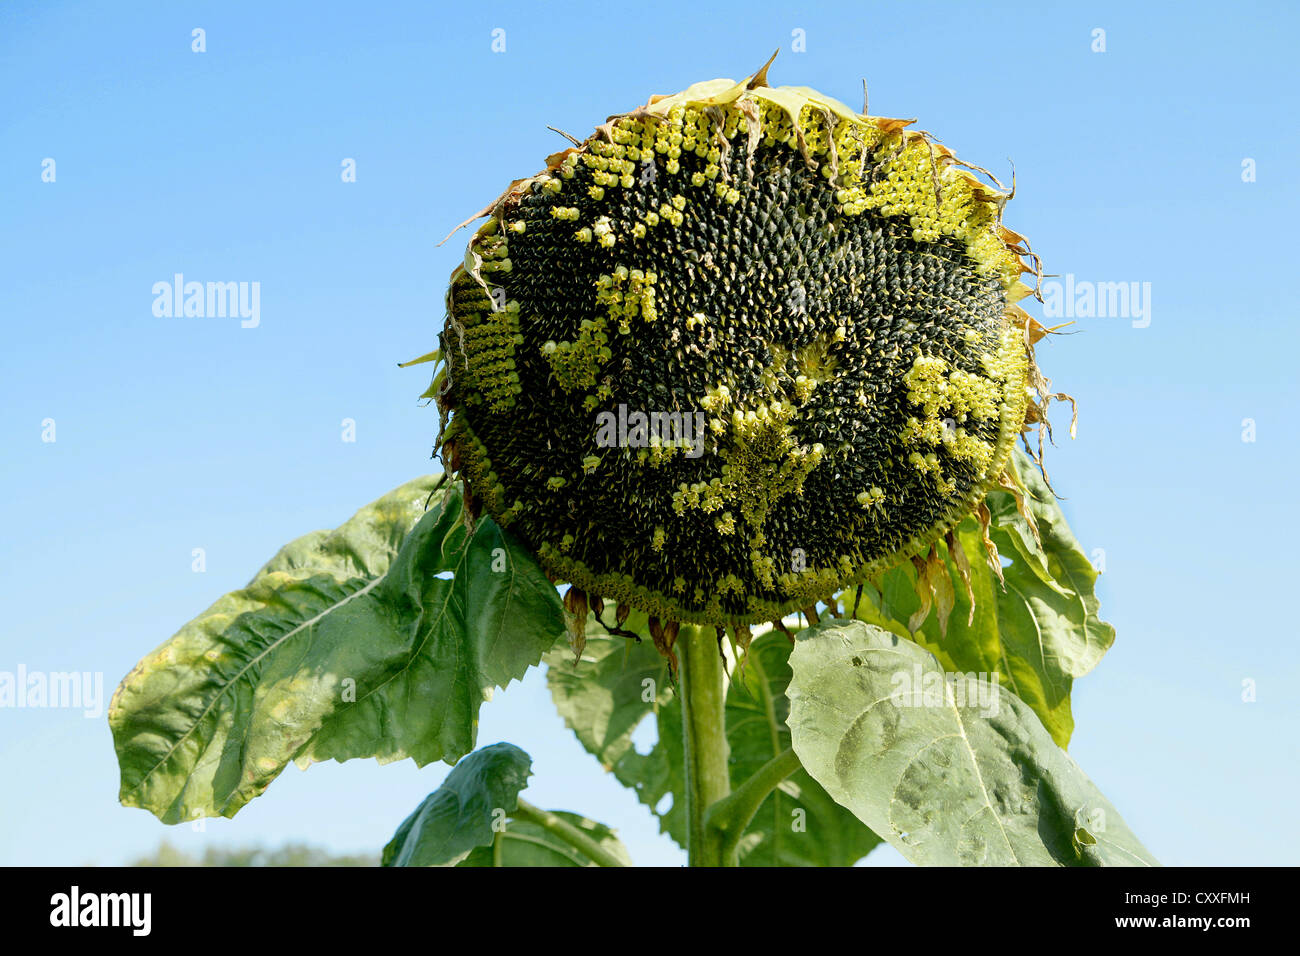 Mature sunflower Stock Photo